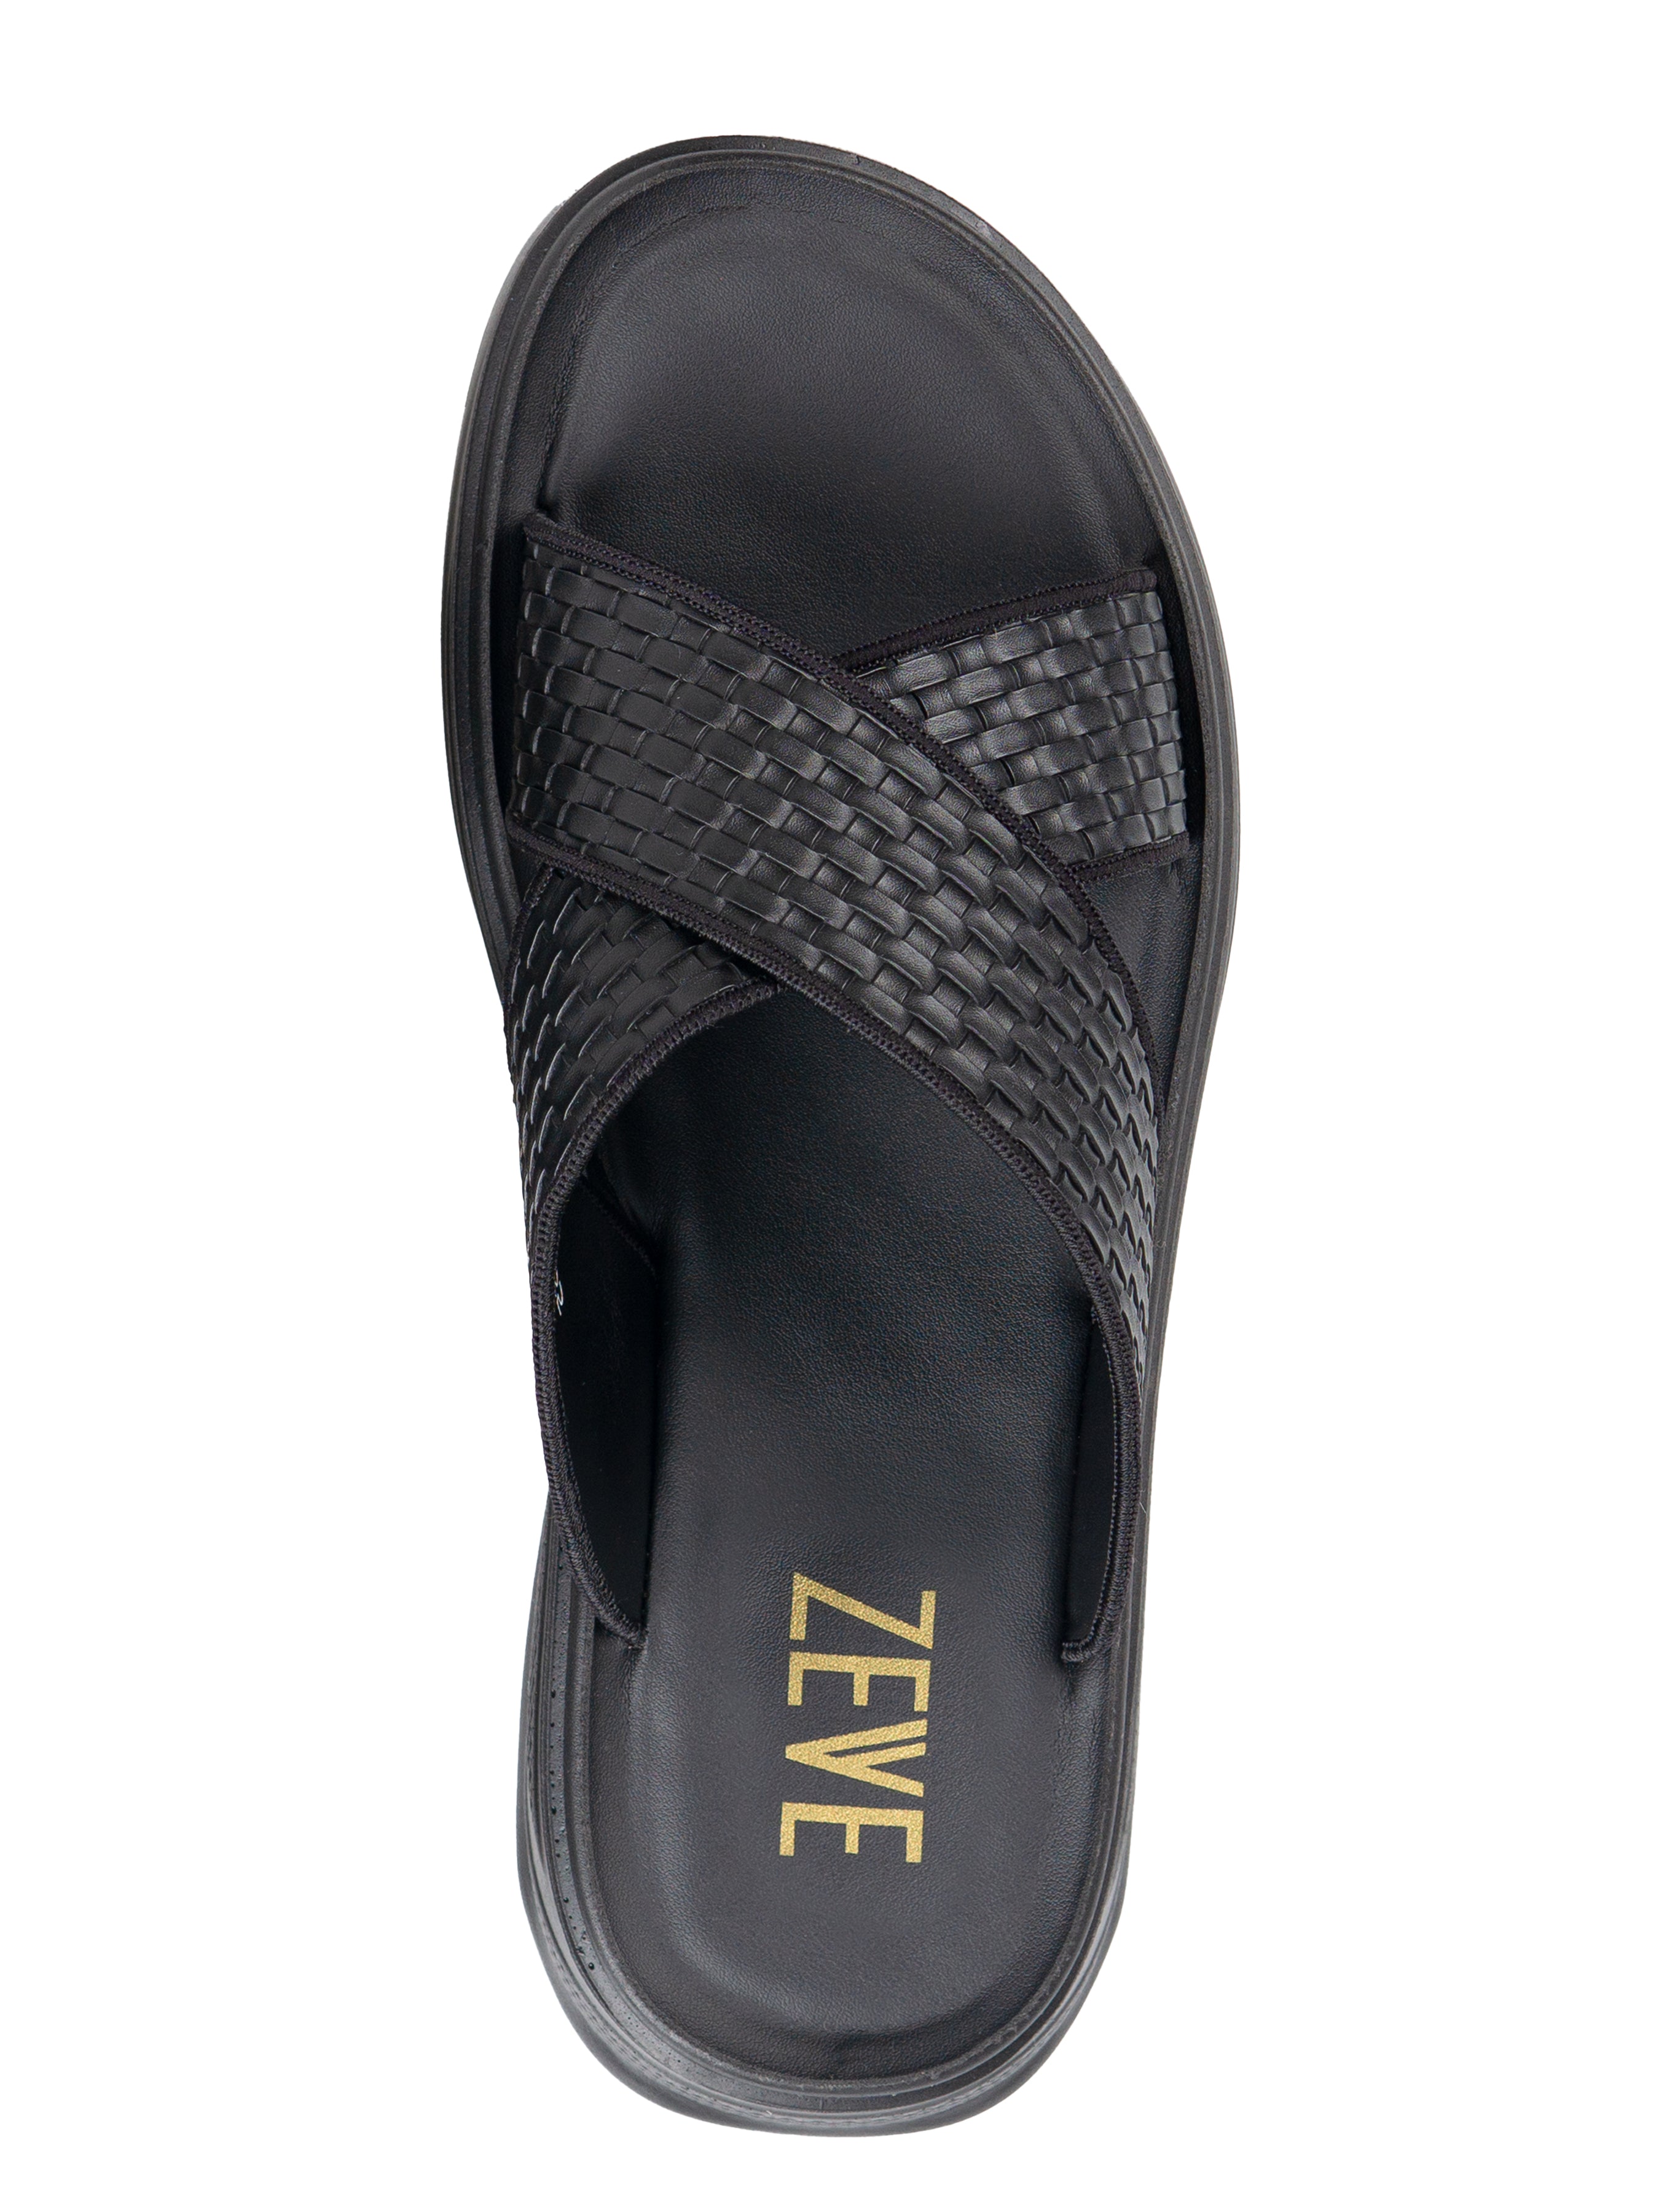 Cross Strap Sandal - Black Woven (Cloud Sole) | Zeve Shoes